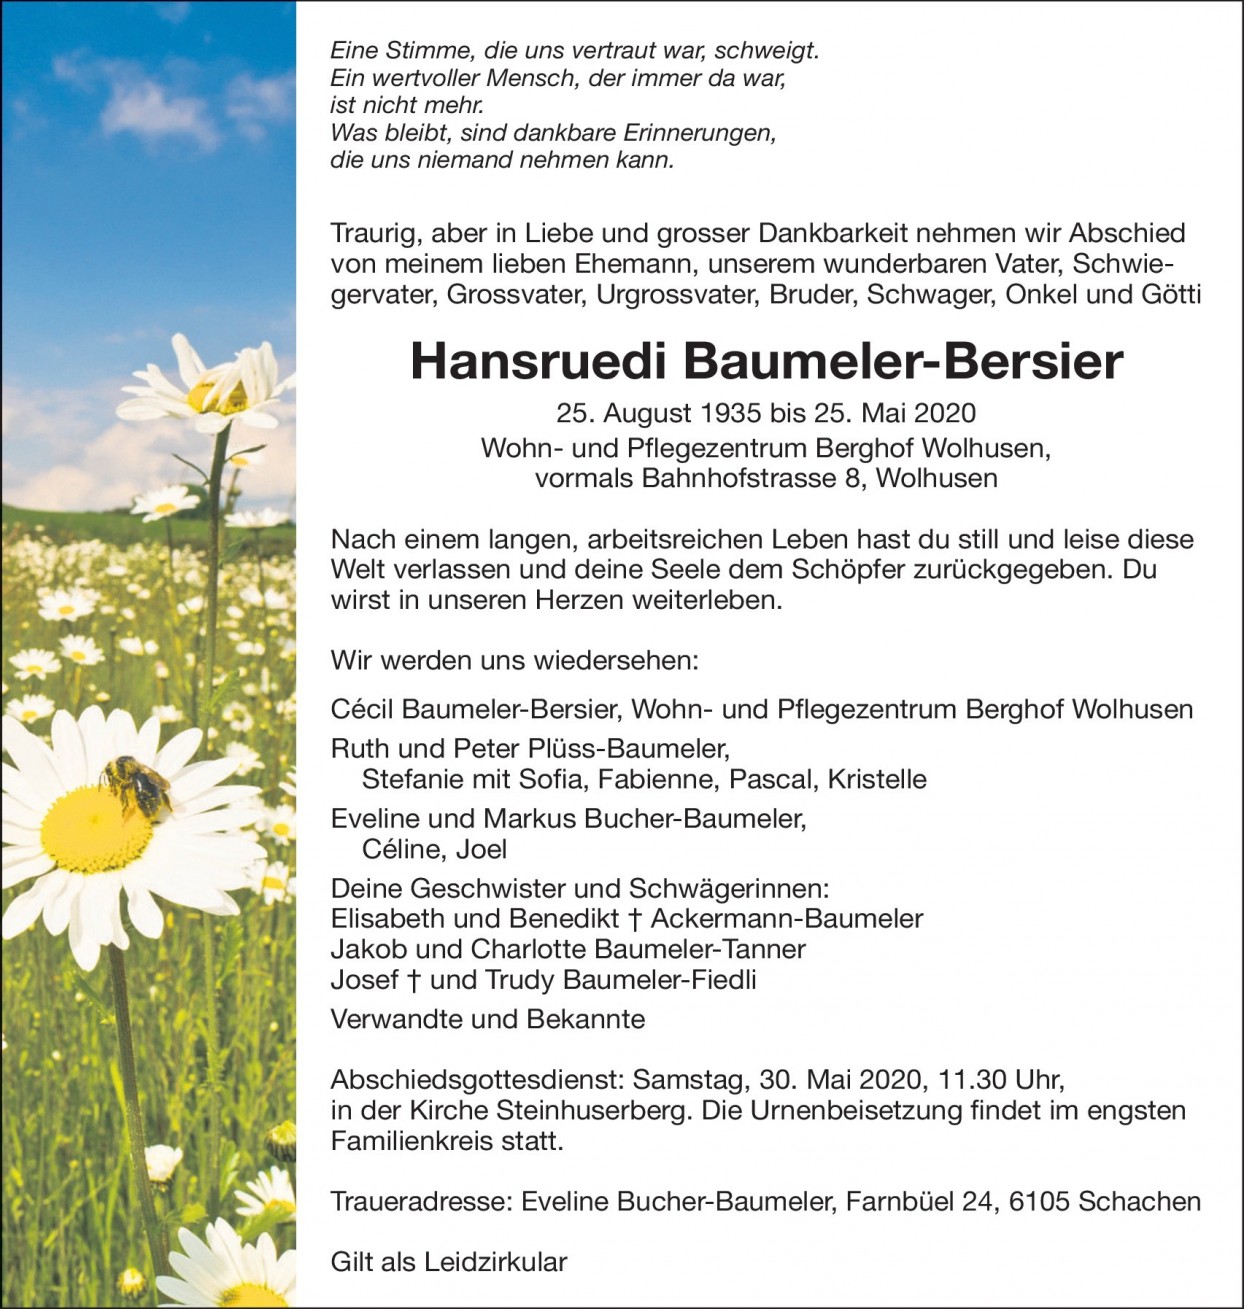 Hansruedi Baumeler-Bersier